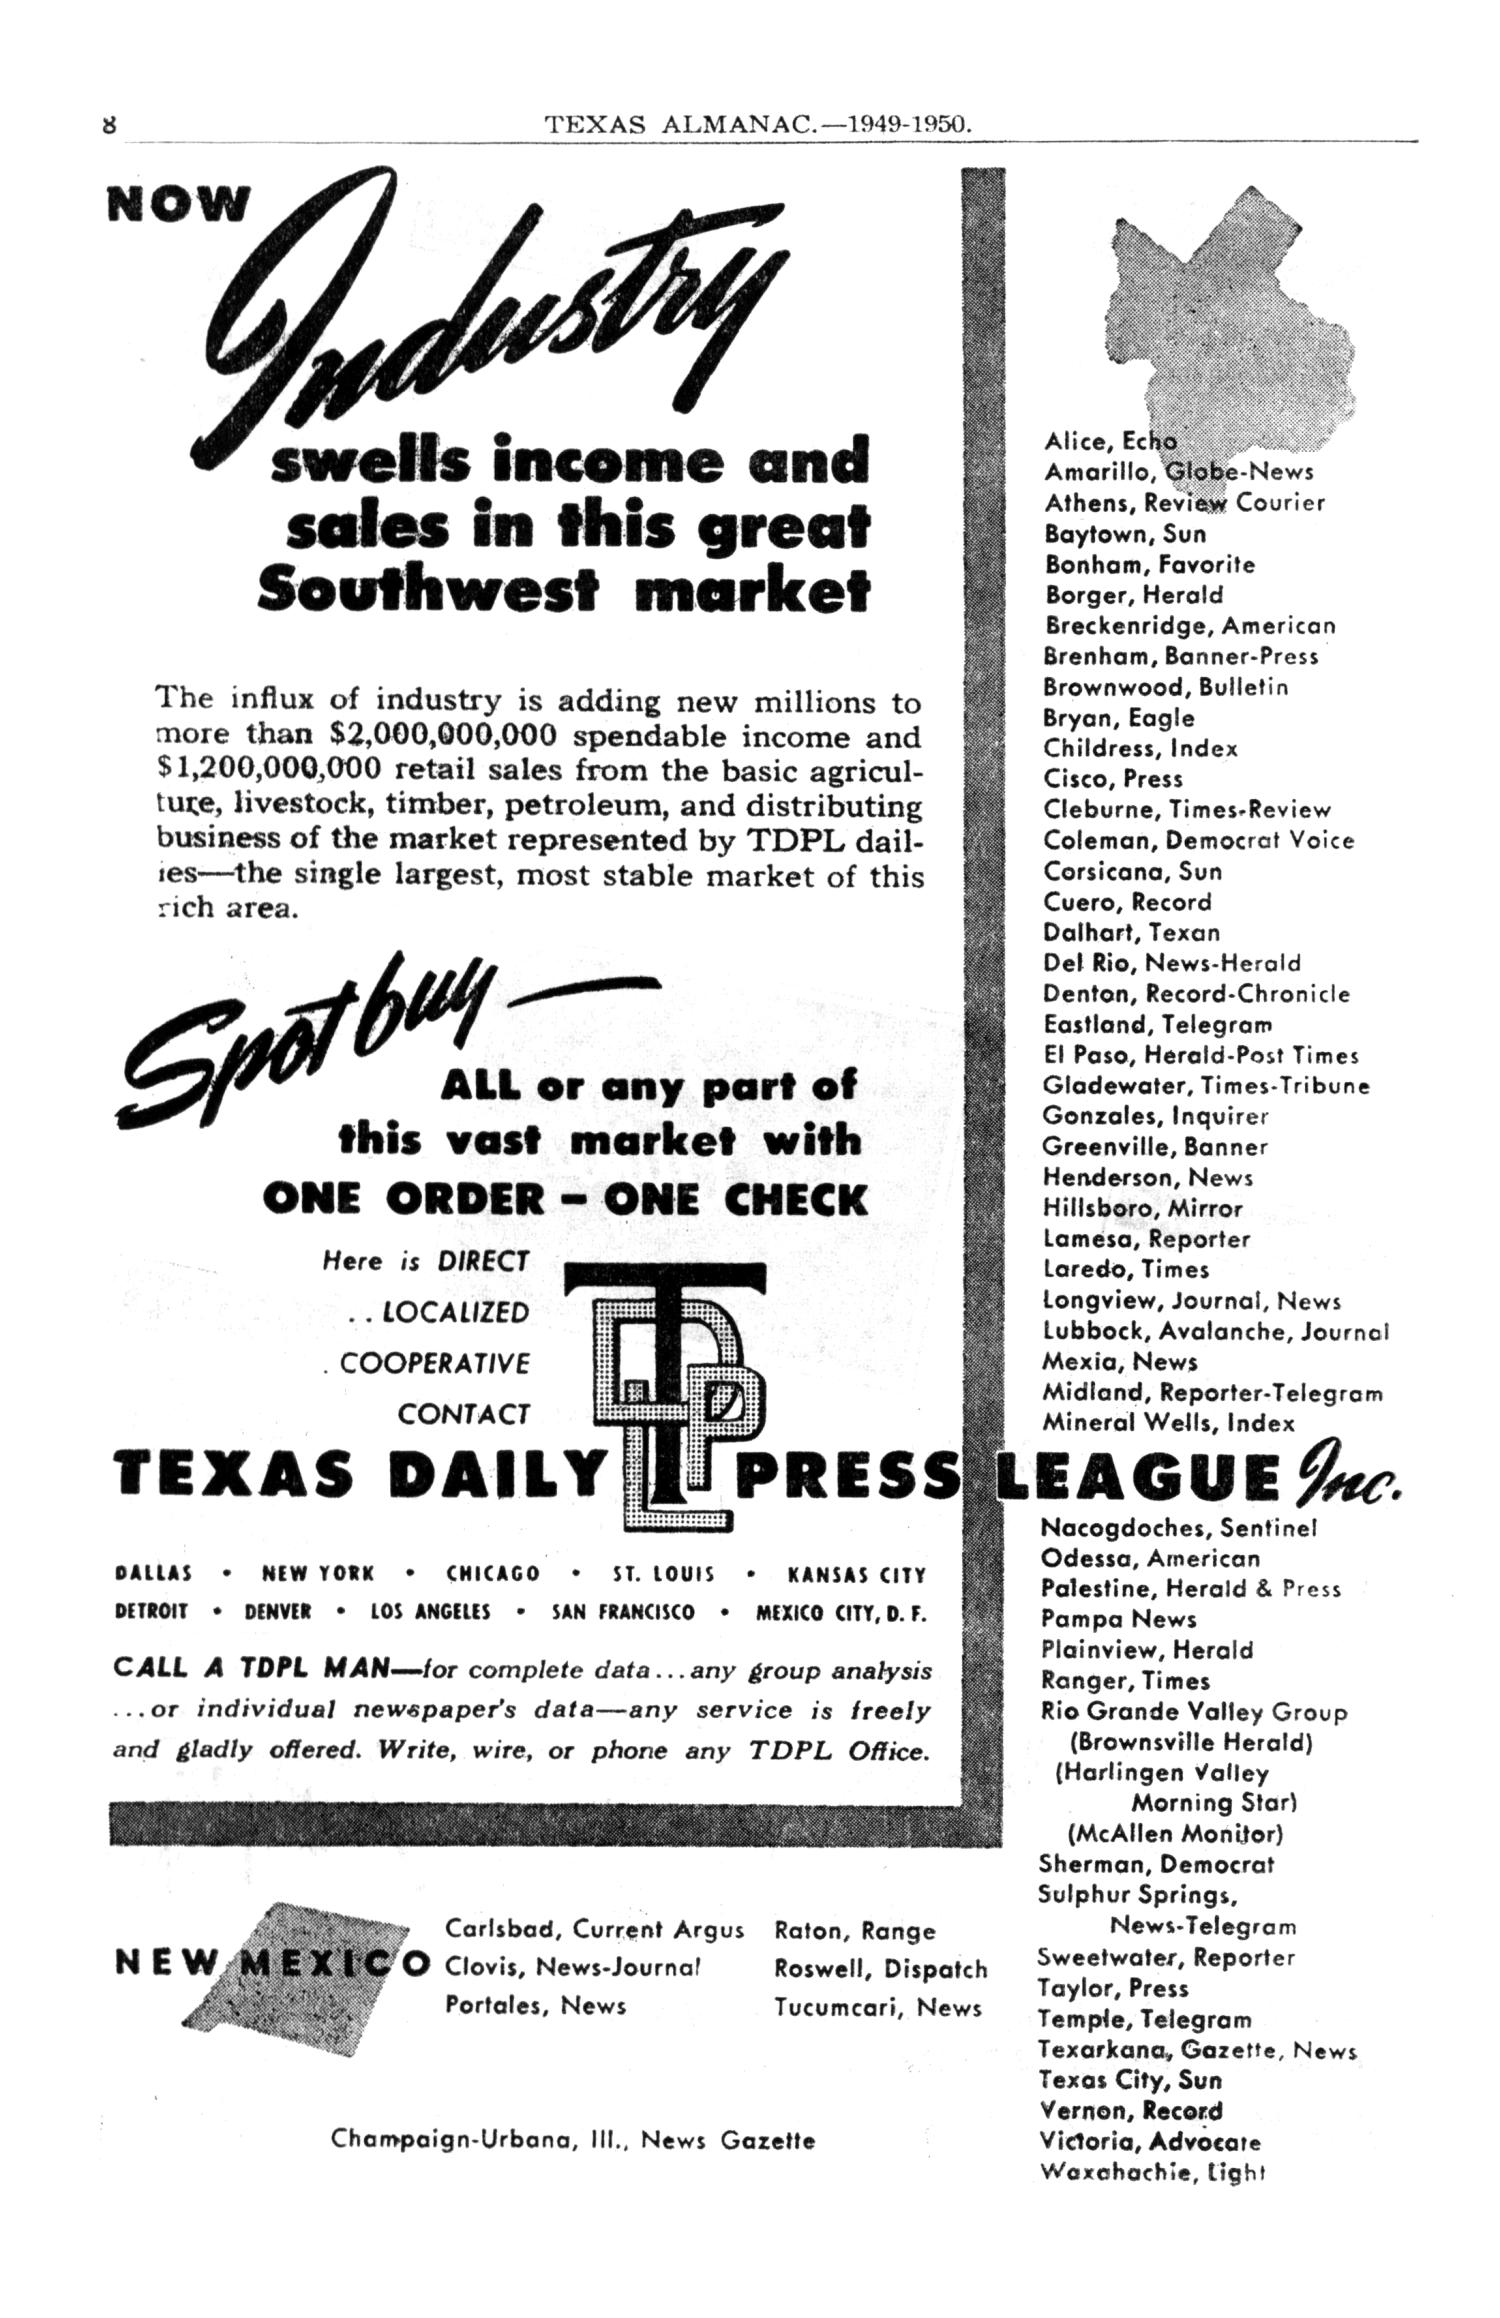 Texas Almanac, 1949-1950
                                                
                                                    8
                                                